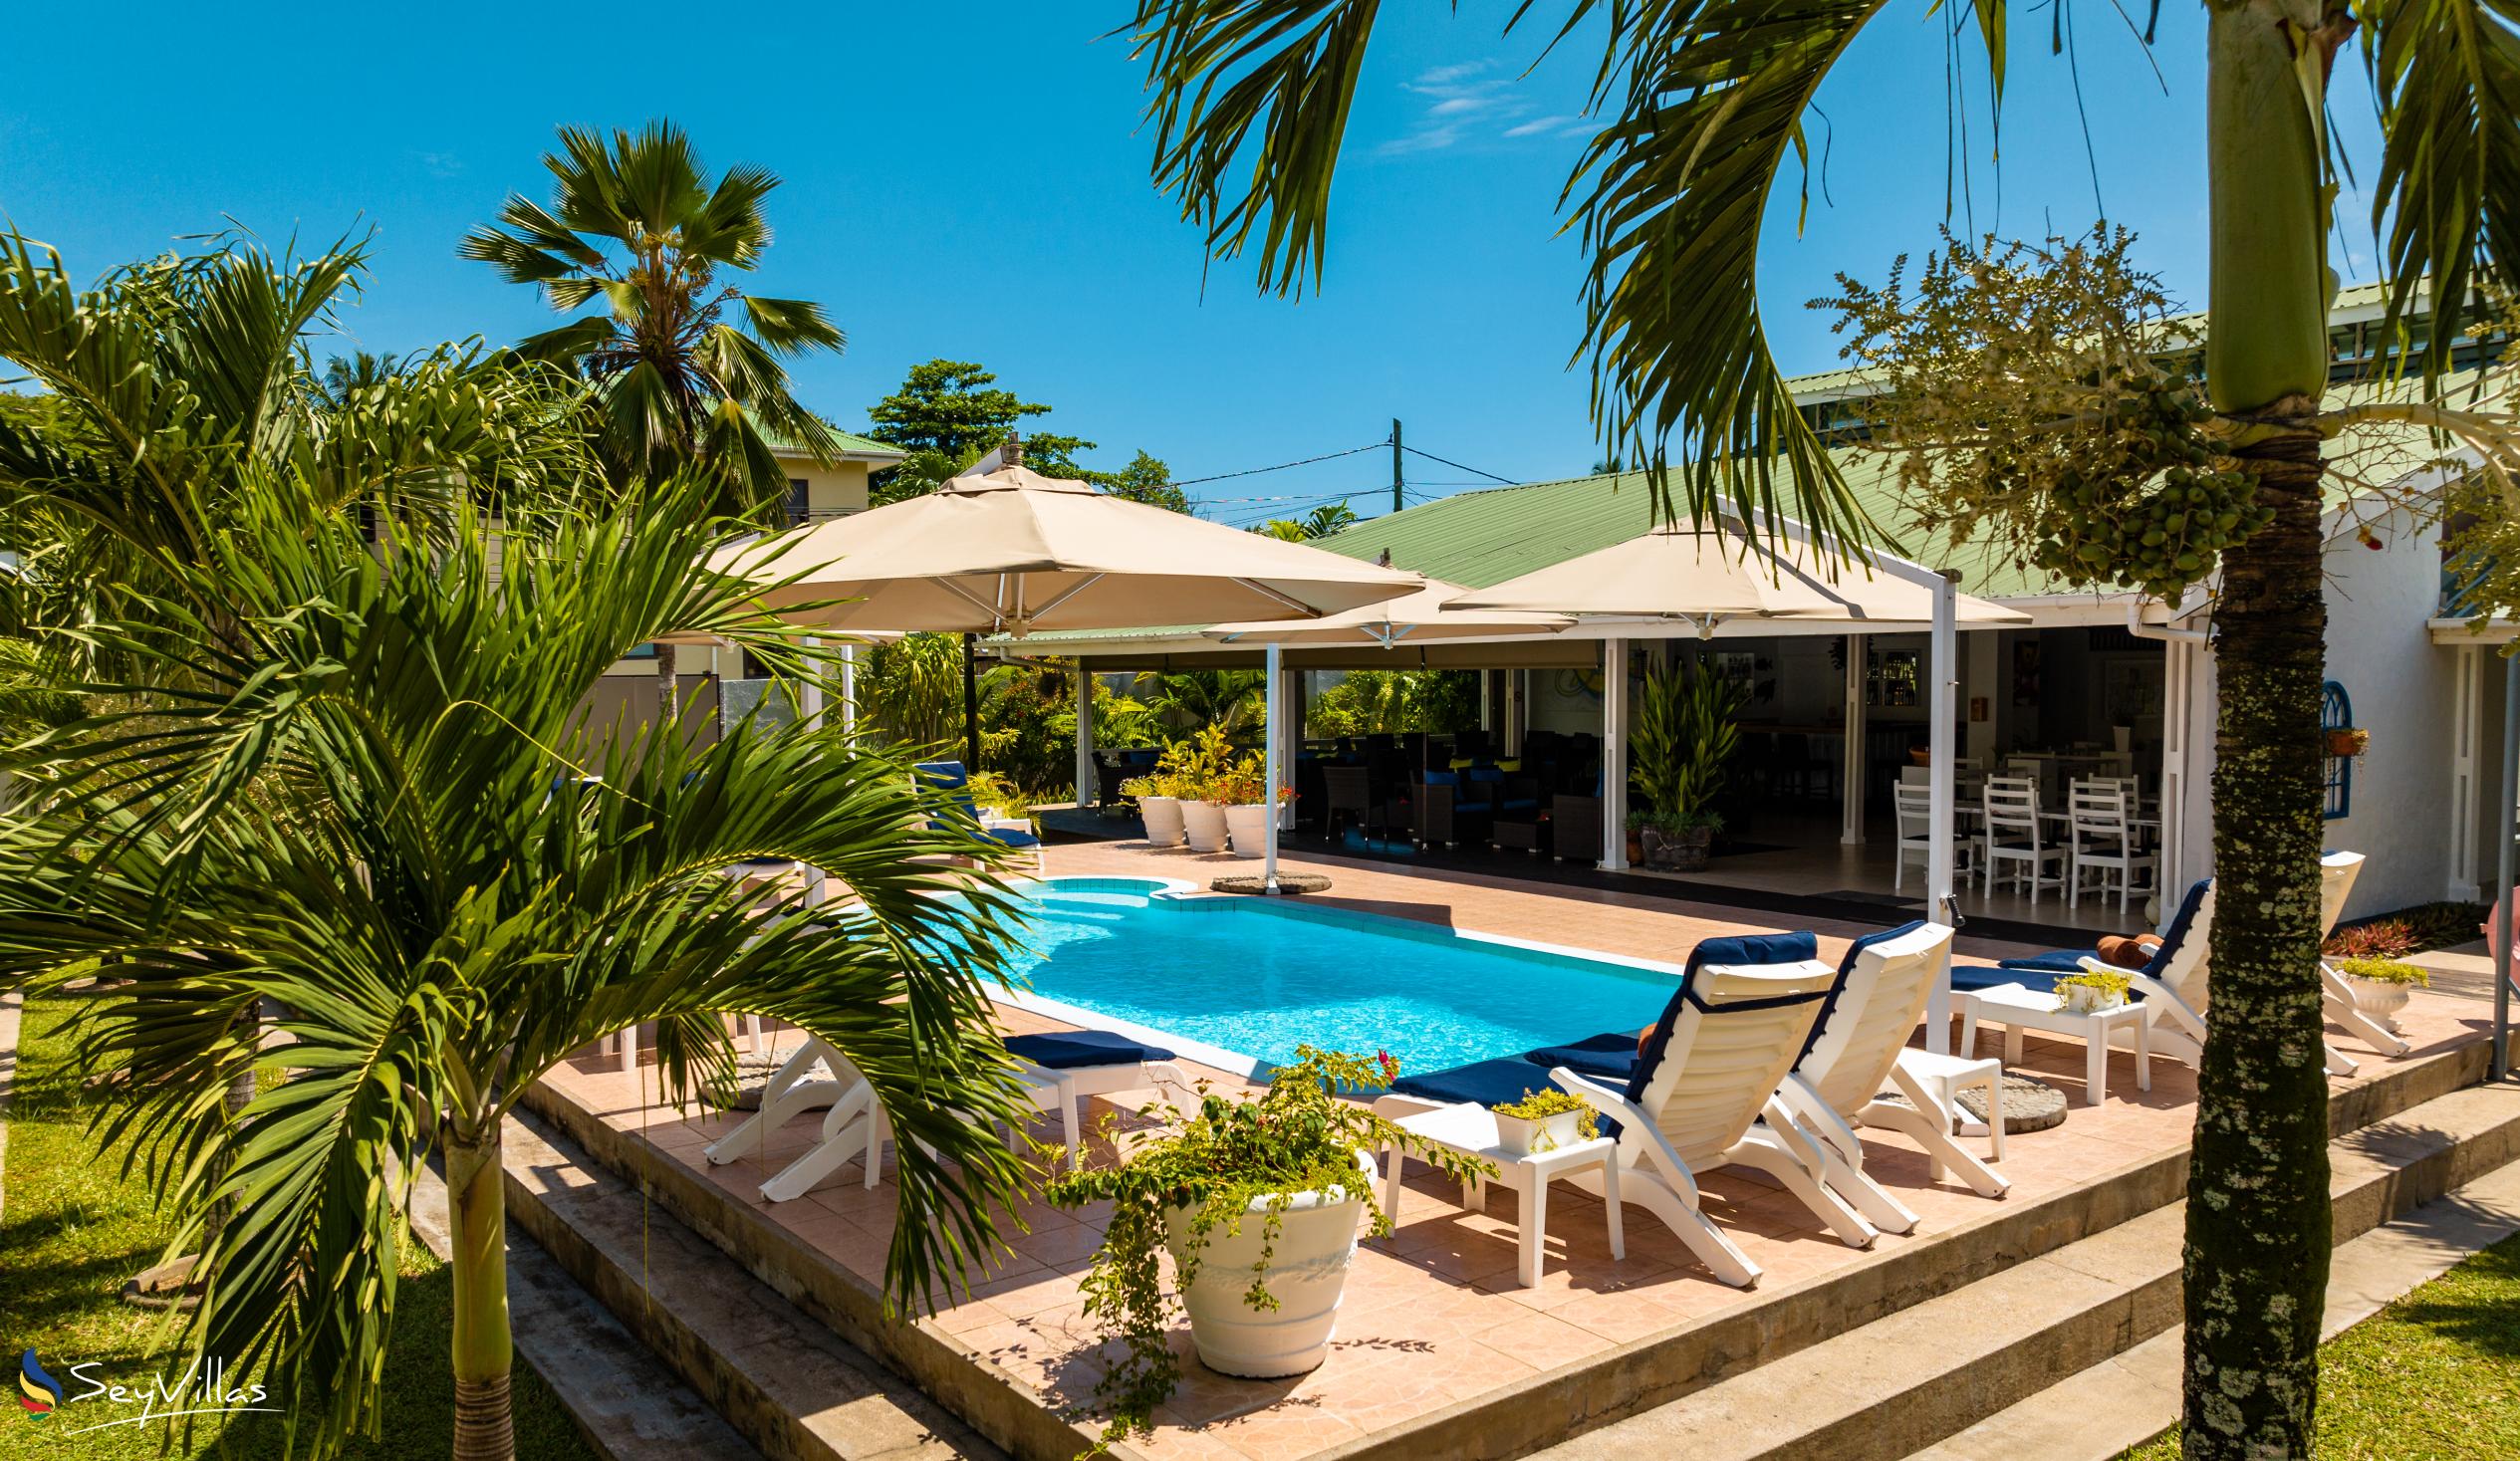 Photo 1: Hotel La Roussette - Outdoor area - Mahé (Seychelles)